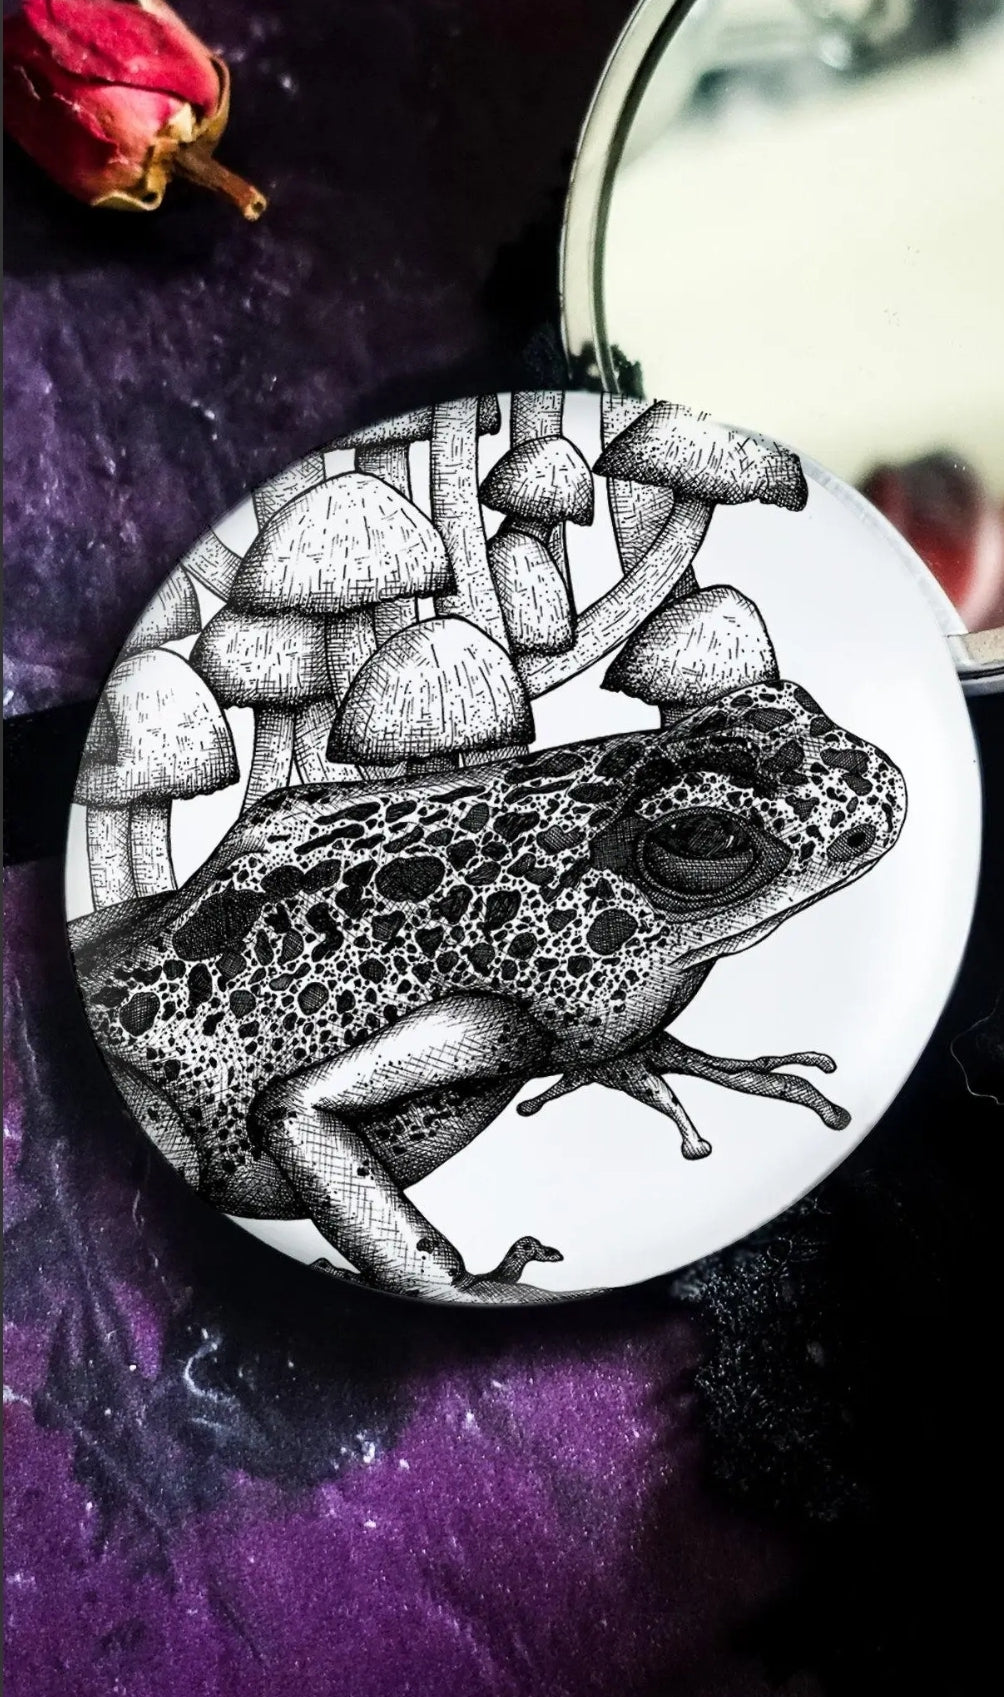 Frog and Mushroom Pocket Mirror